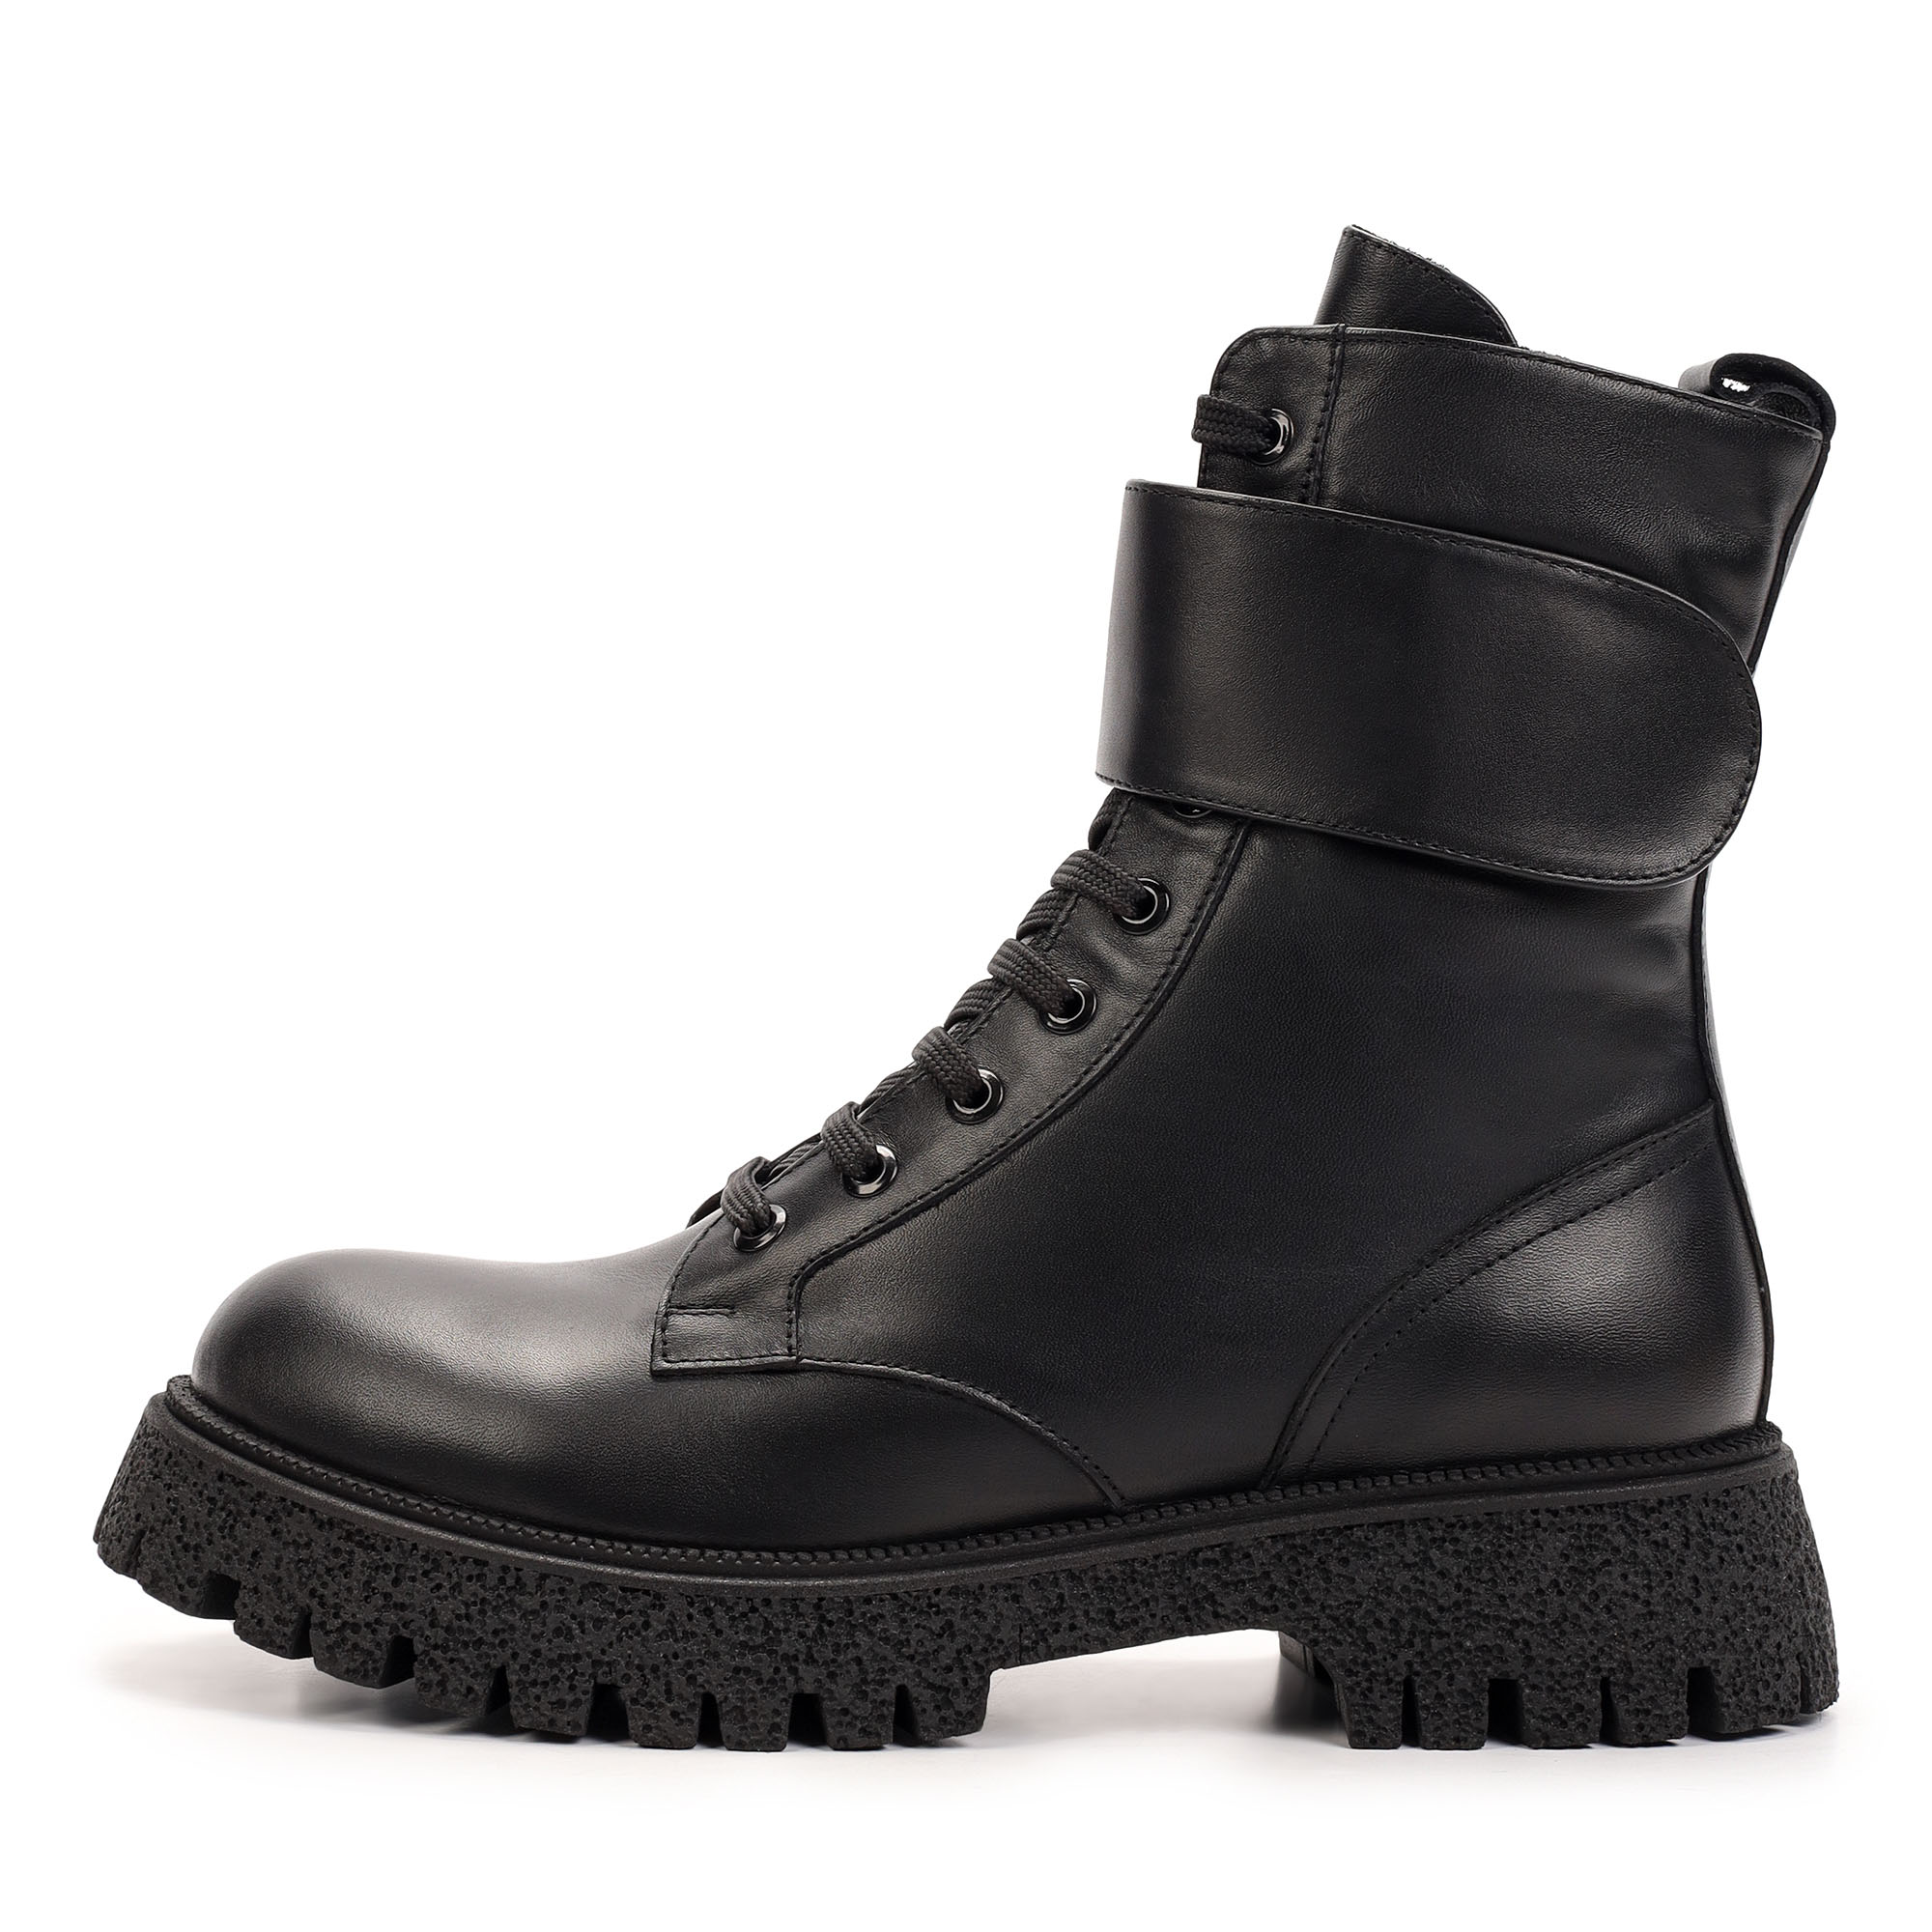 Ботинки Thomas Munz 506-163A-20202, цвет черный, размер 38